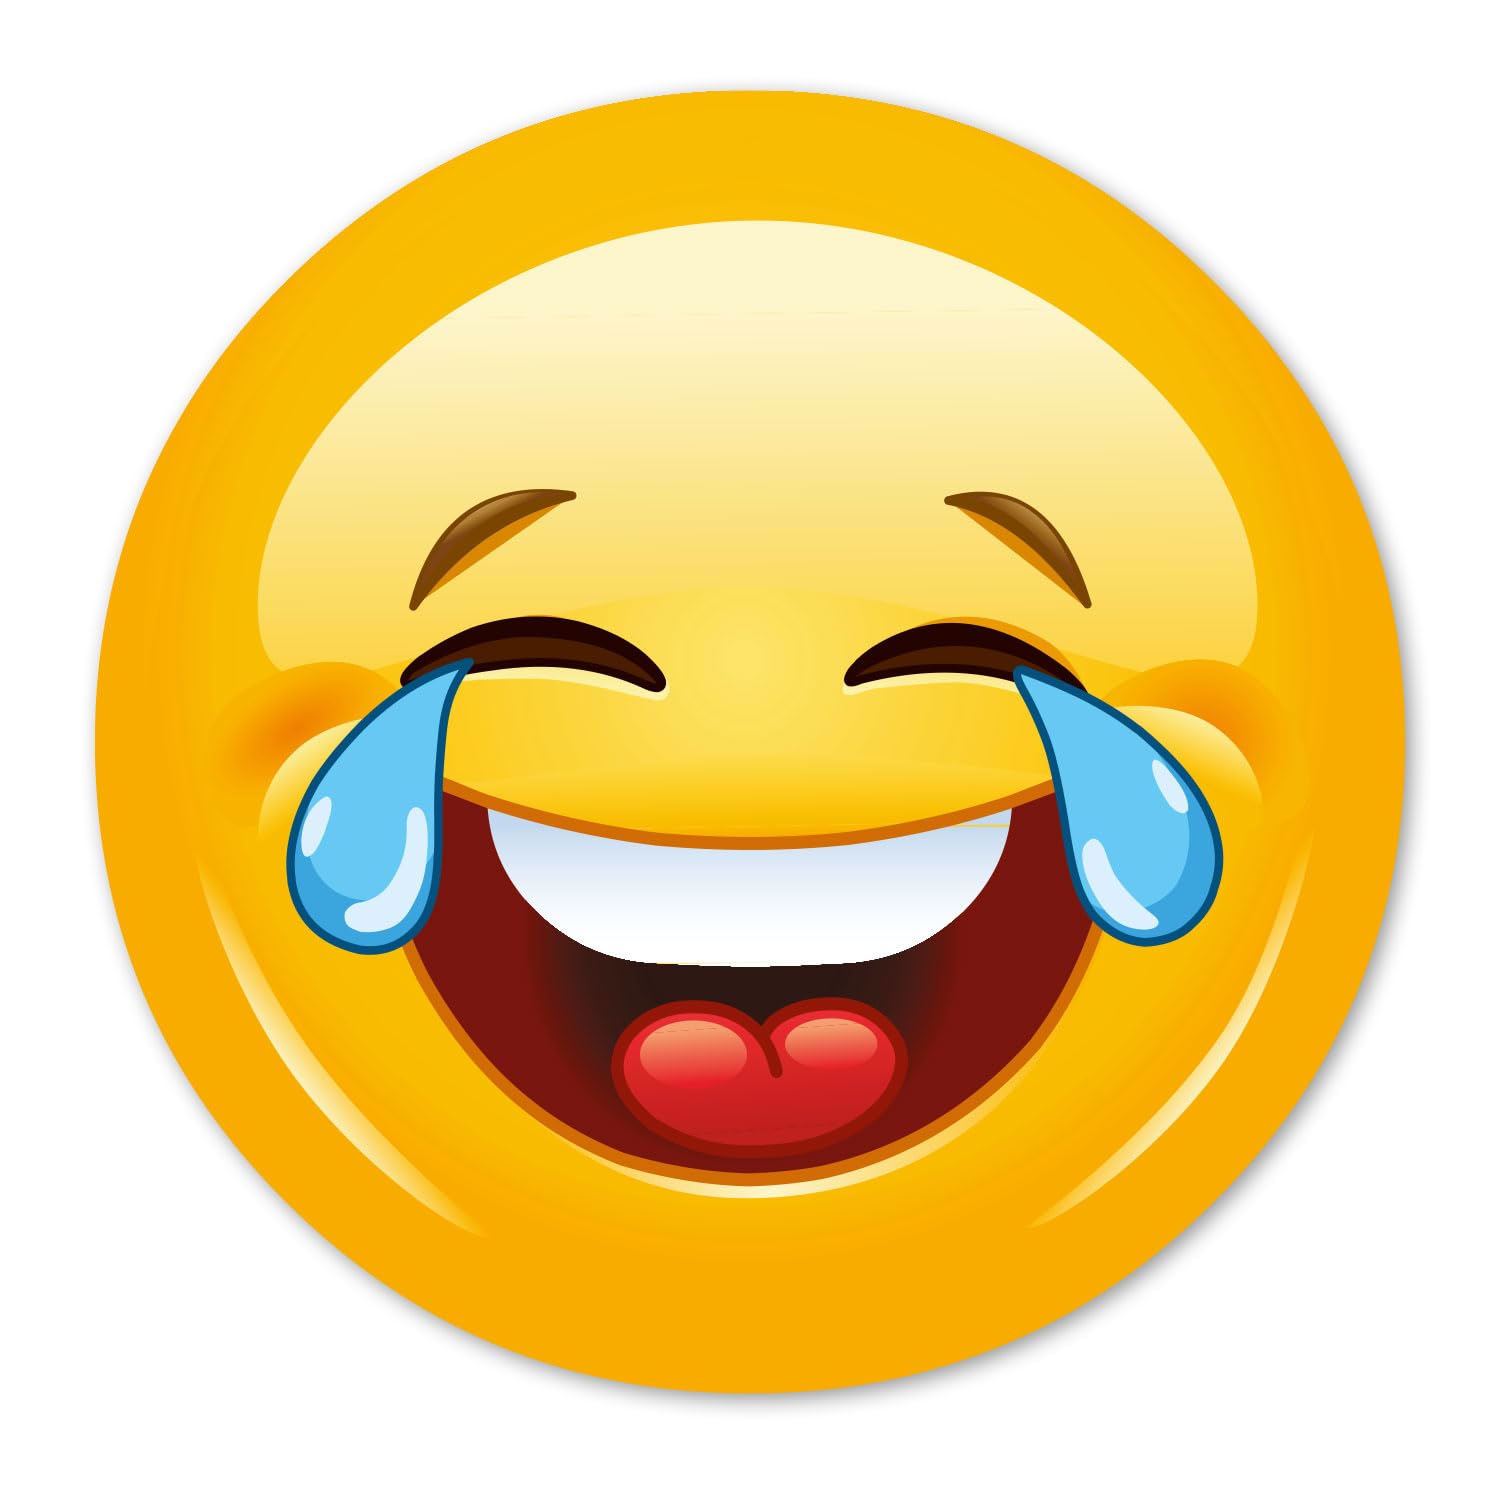 easydruck24de XL Smiley-Aufkleber Tears I kfz_309 I rund Ø 30 cm I Emoticon Sticker lachend für Auto Wohnwagen Wohnmobil und mehr I wetterfest von easydruck24de